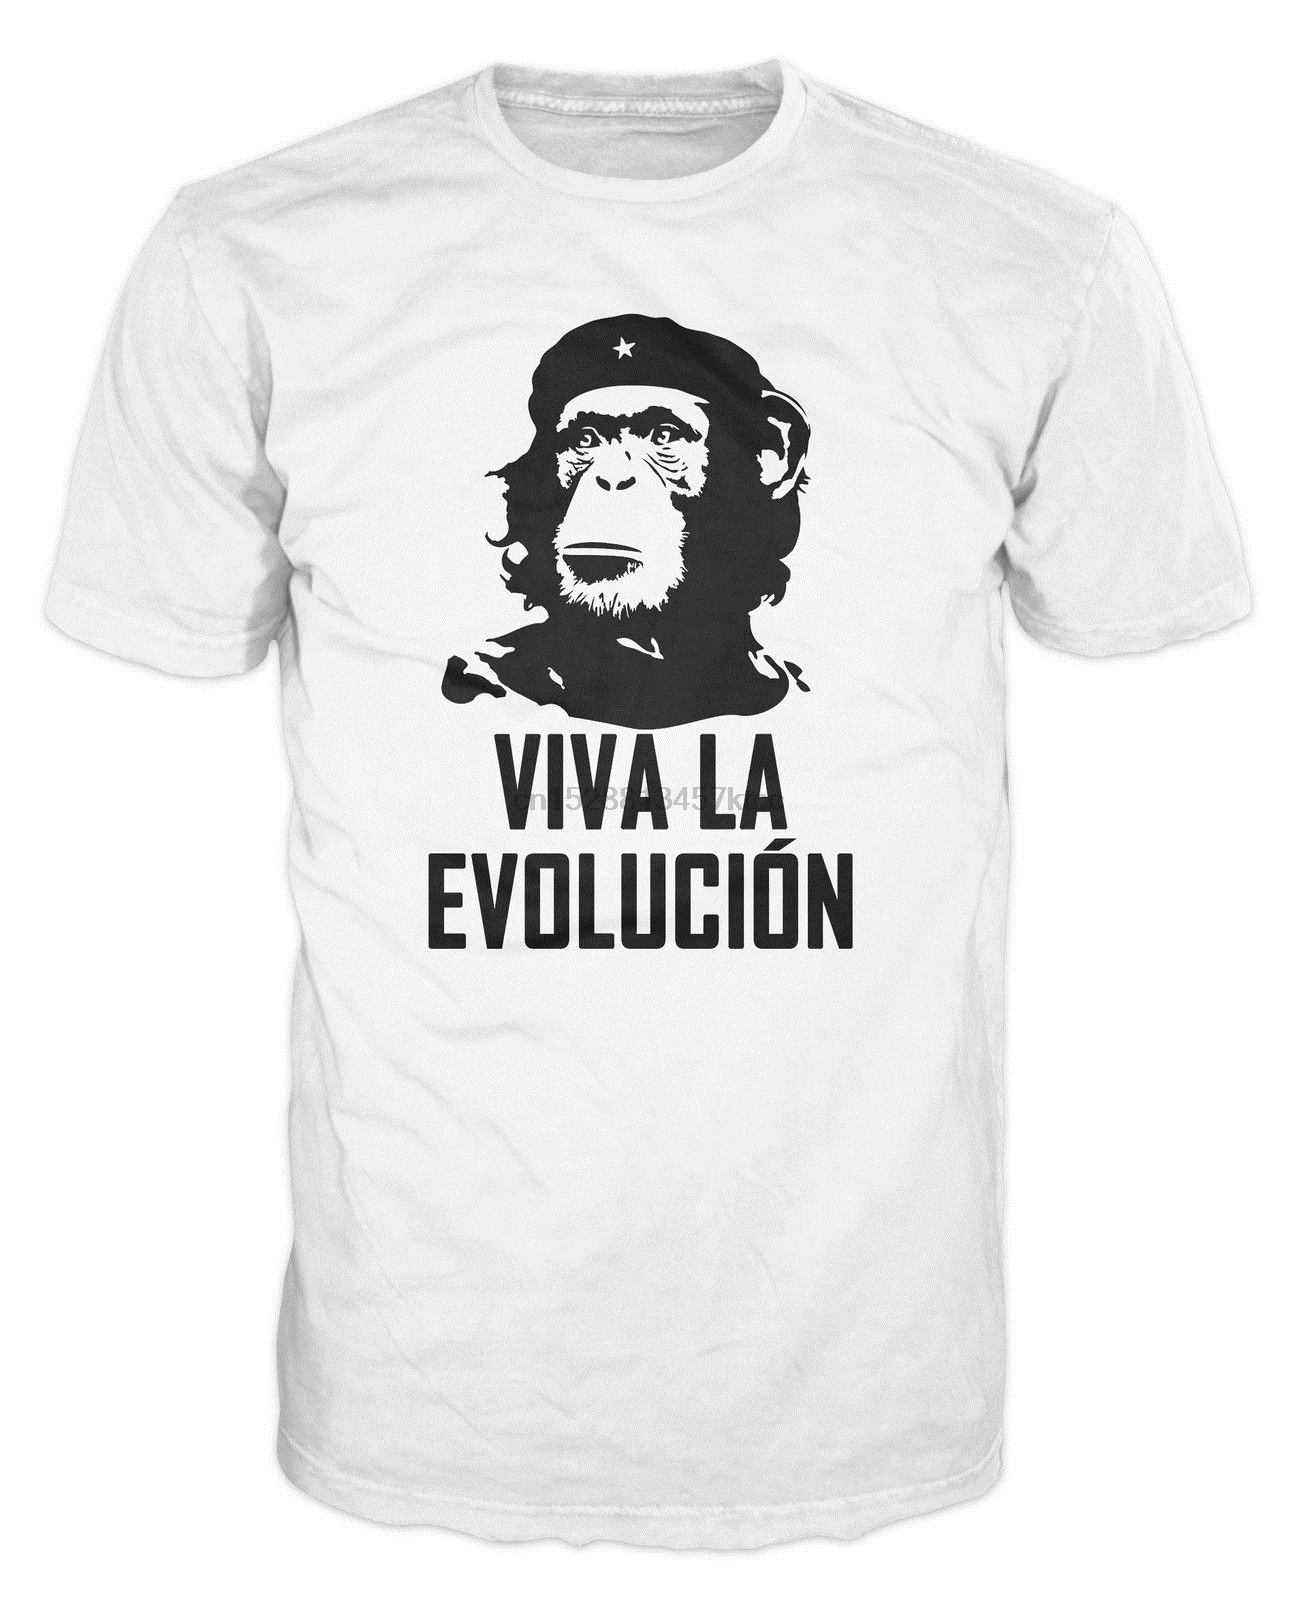 2019 горячая Распродажа Бесплатная доставка 100% хлопок Viva La Evolucion Evolution Che Guevara